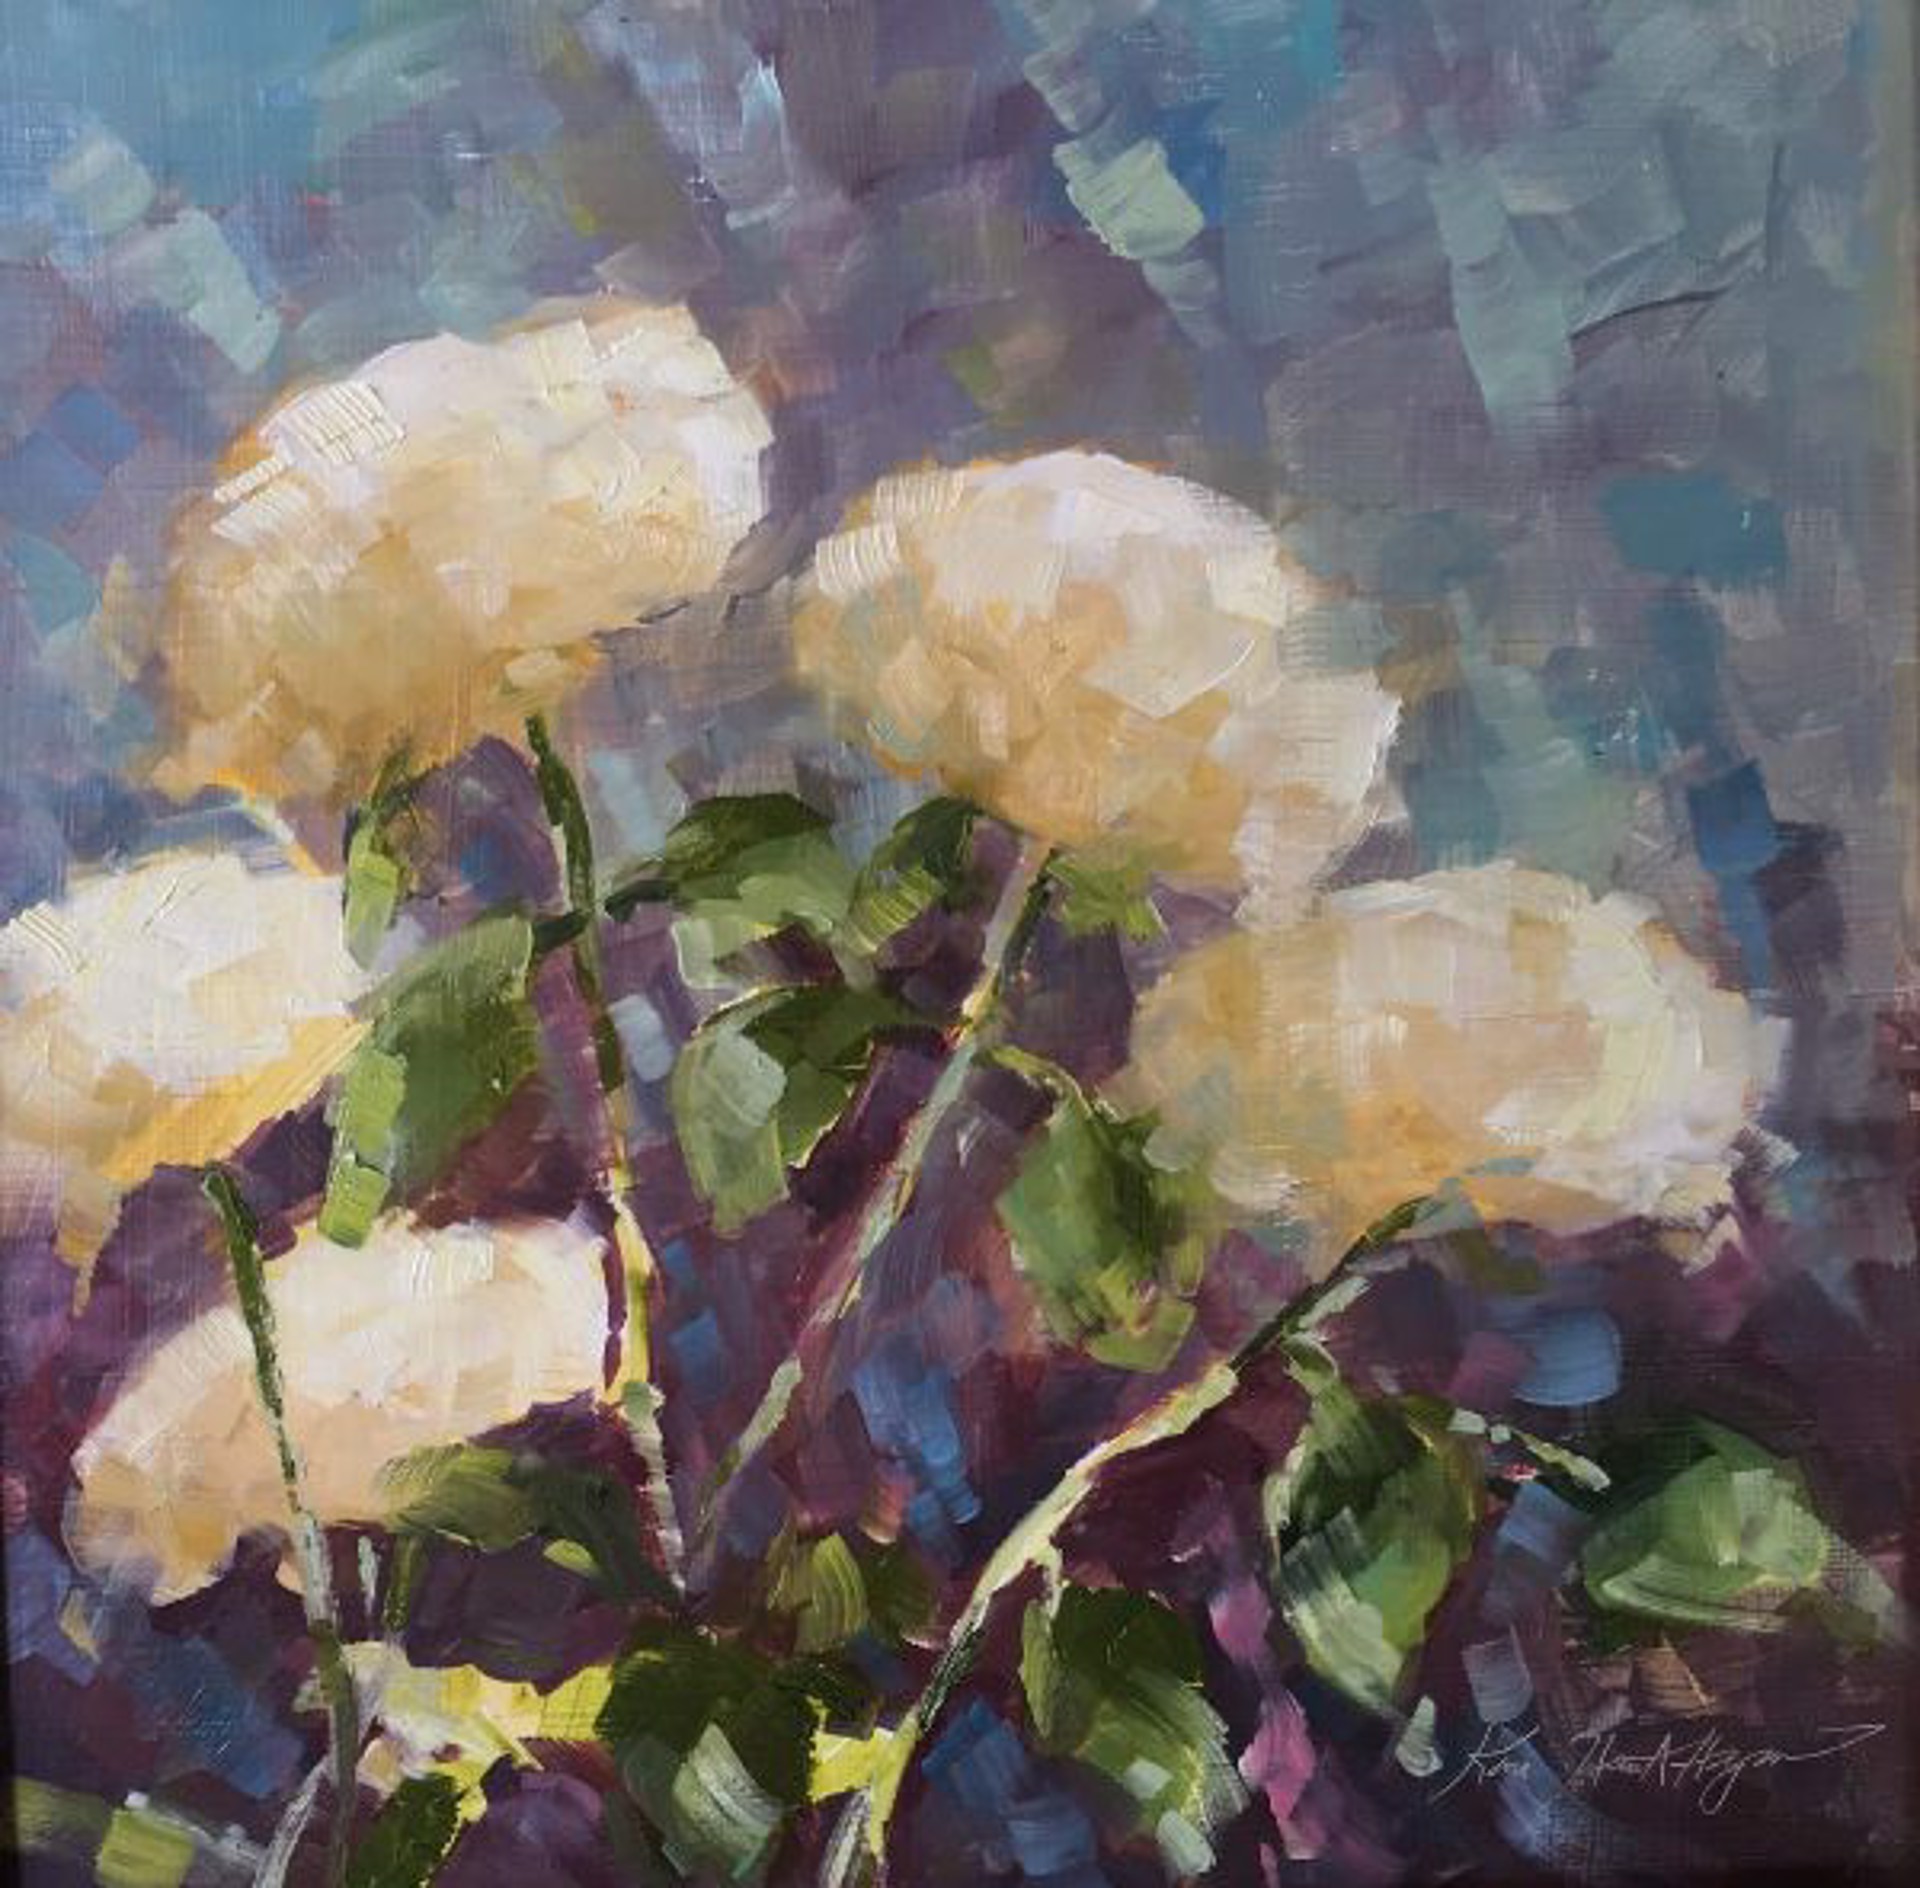 Five White Hydrangeas, Cashiers, NC by Karen Hewitt Hagan